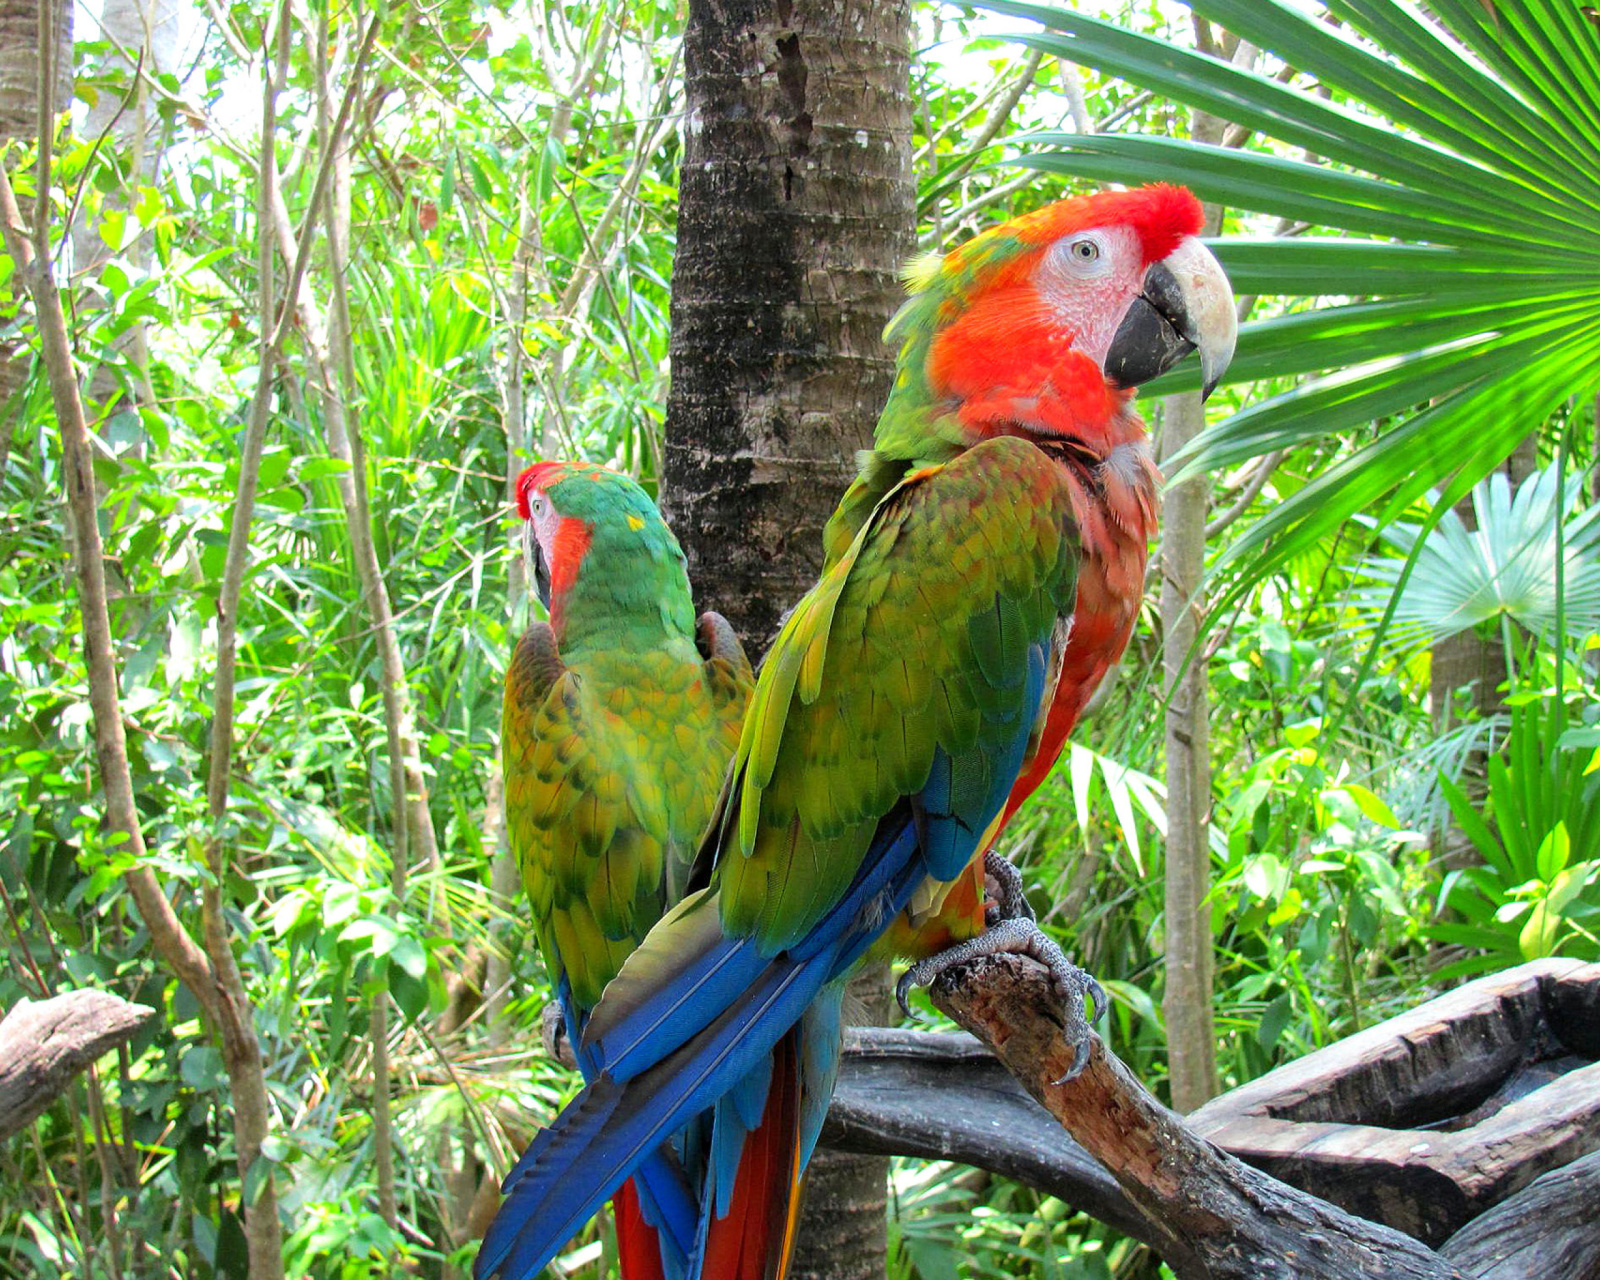 Sfondi Macaw parrot Amazon forest 1600x1280